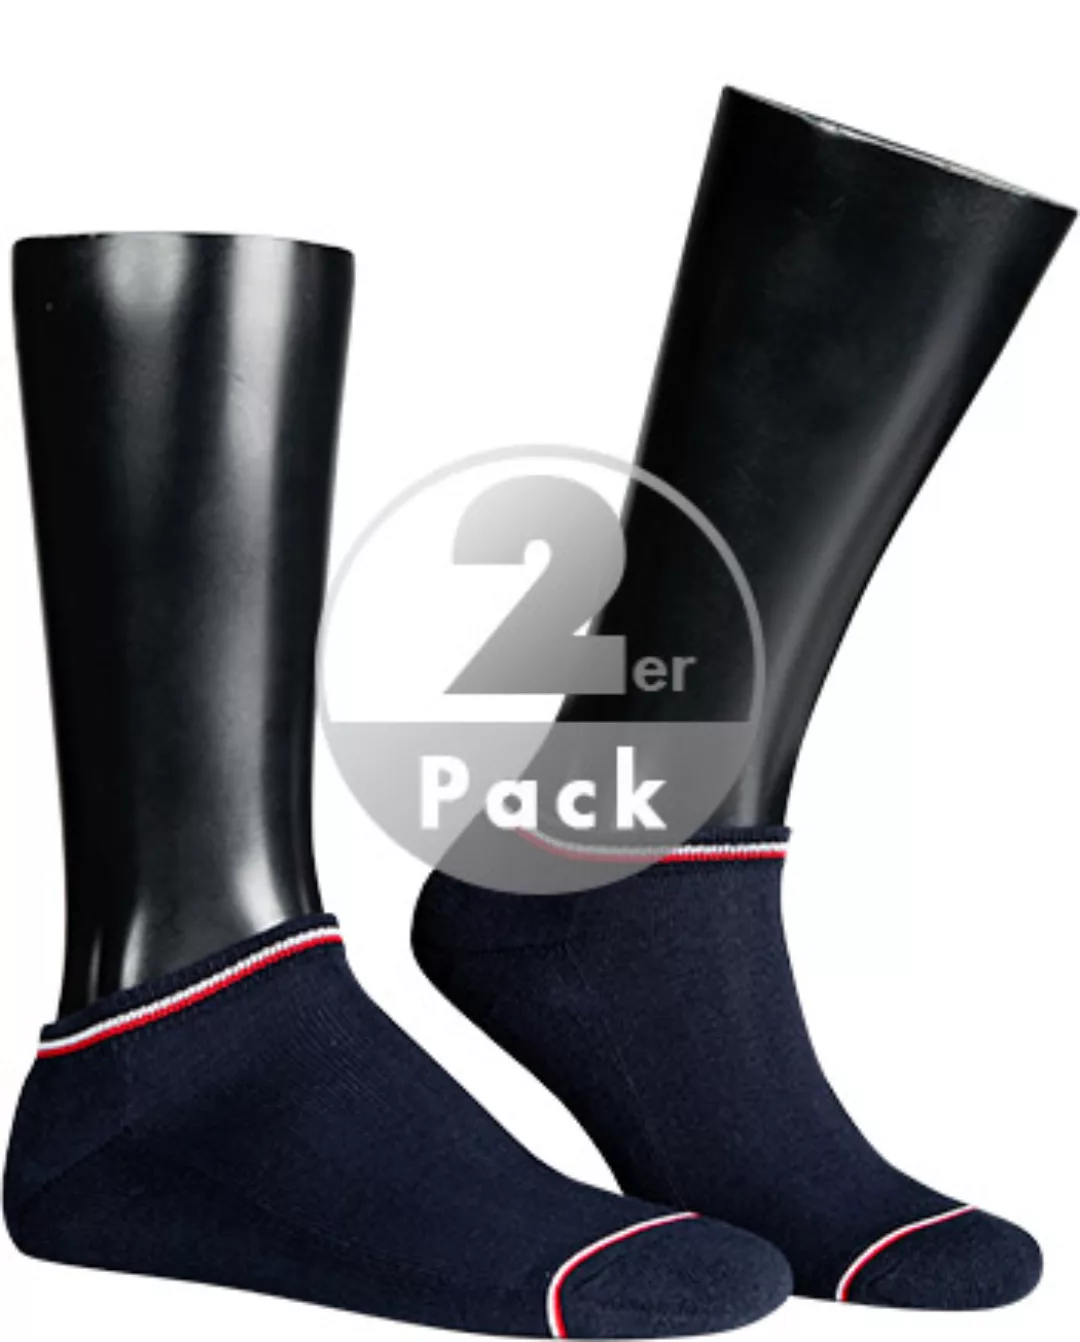 Tommy Hilfiger Iconic Sneaker Socken 2 Paare EU 39-42 Dark Navy günstig online kaufen